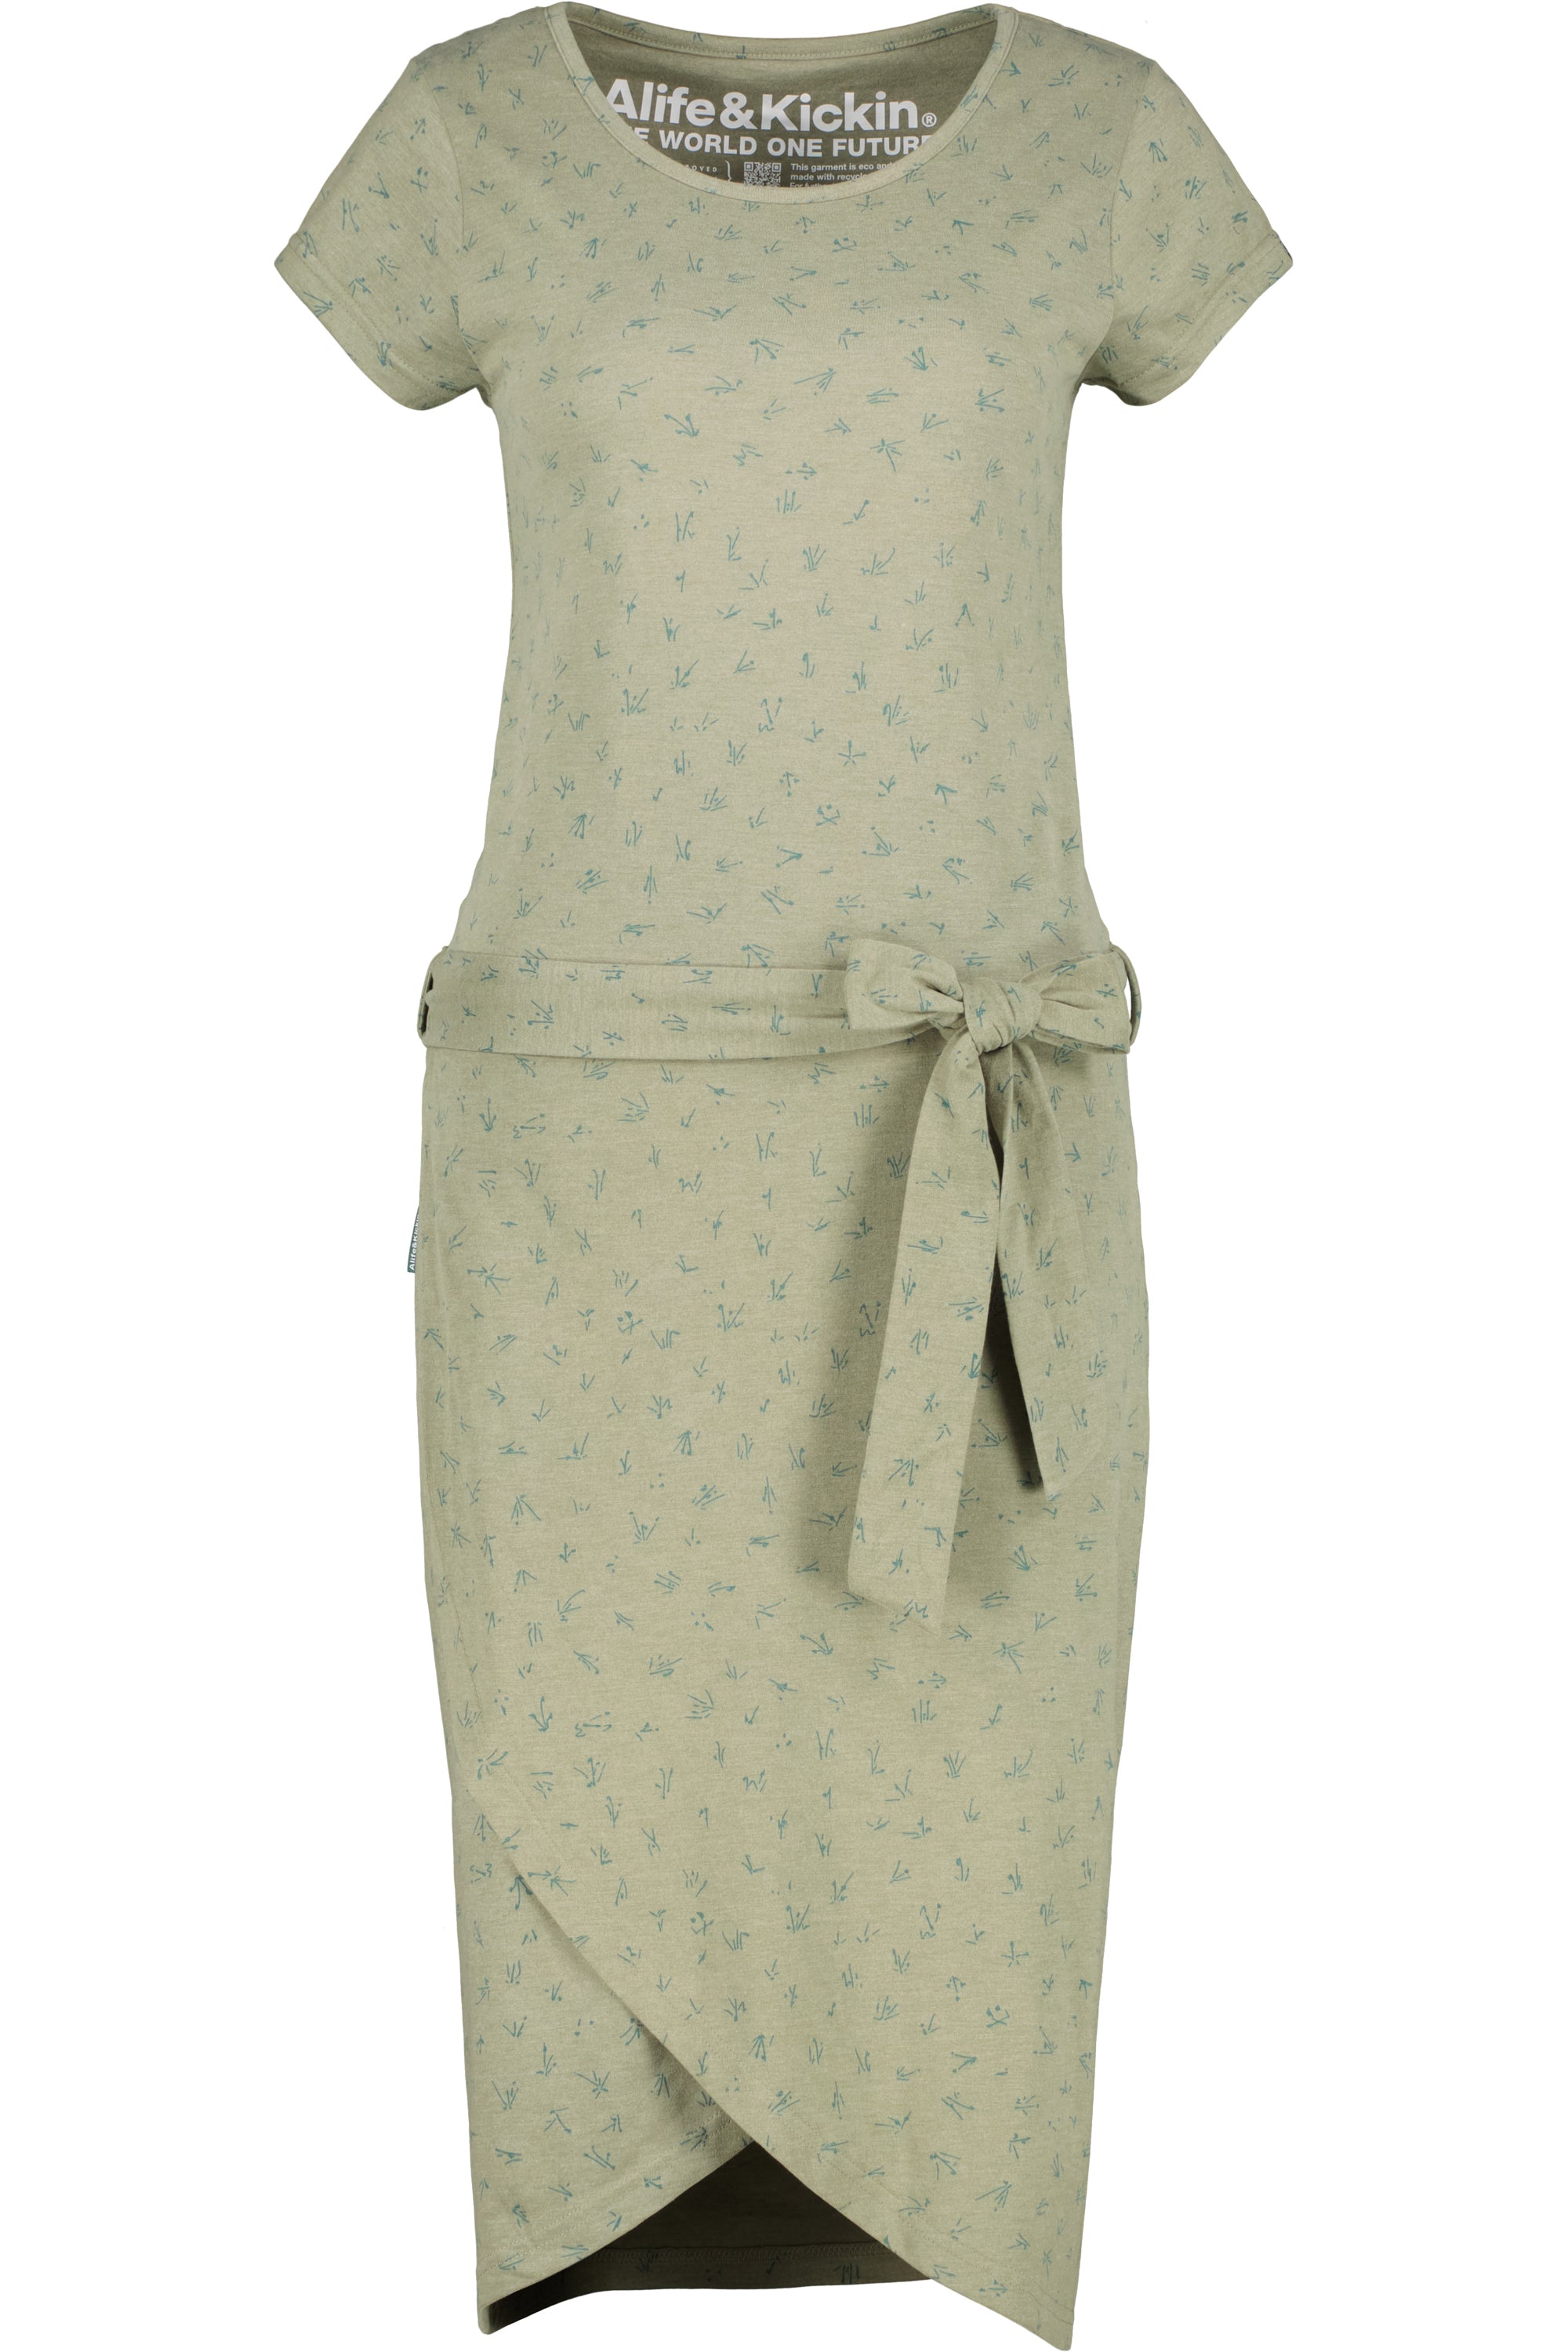 TheaAK Damenkleid mit Allover-Print für den perfekten Sommer-Look Grün